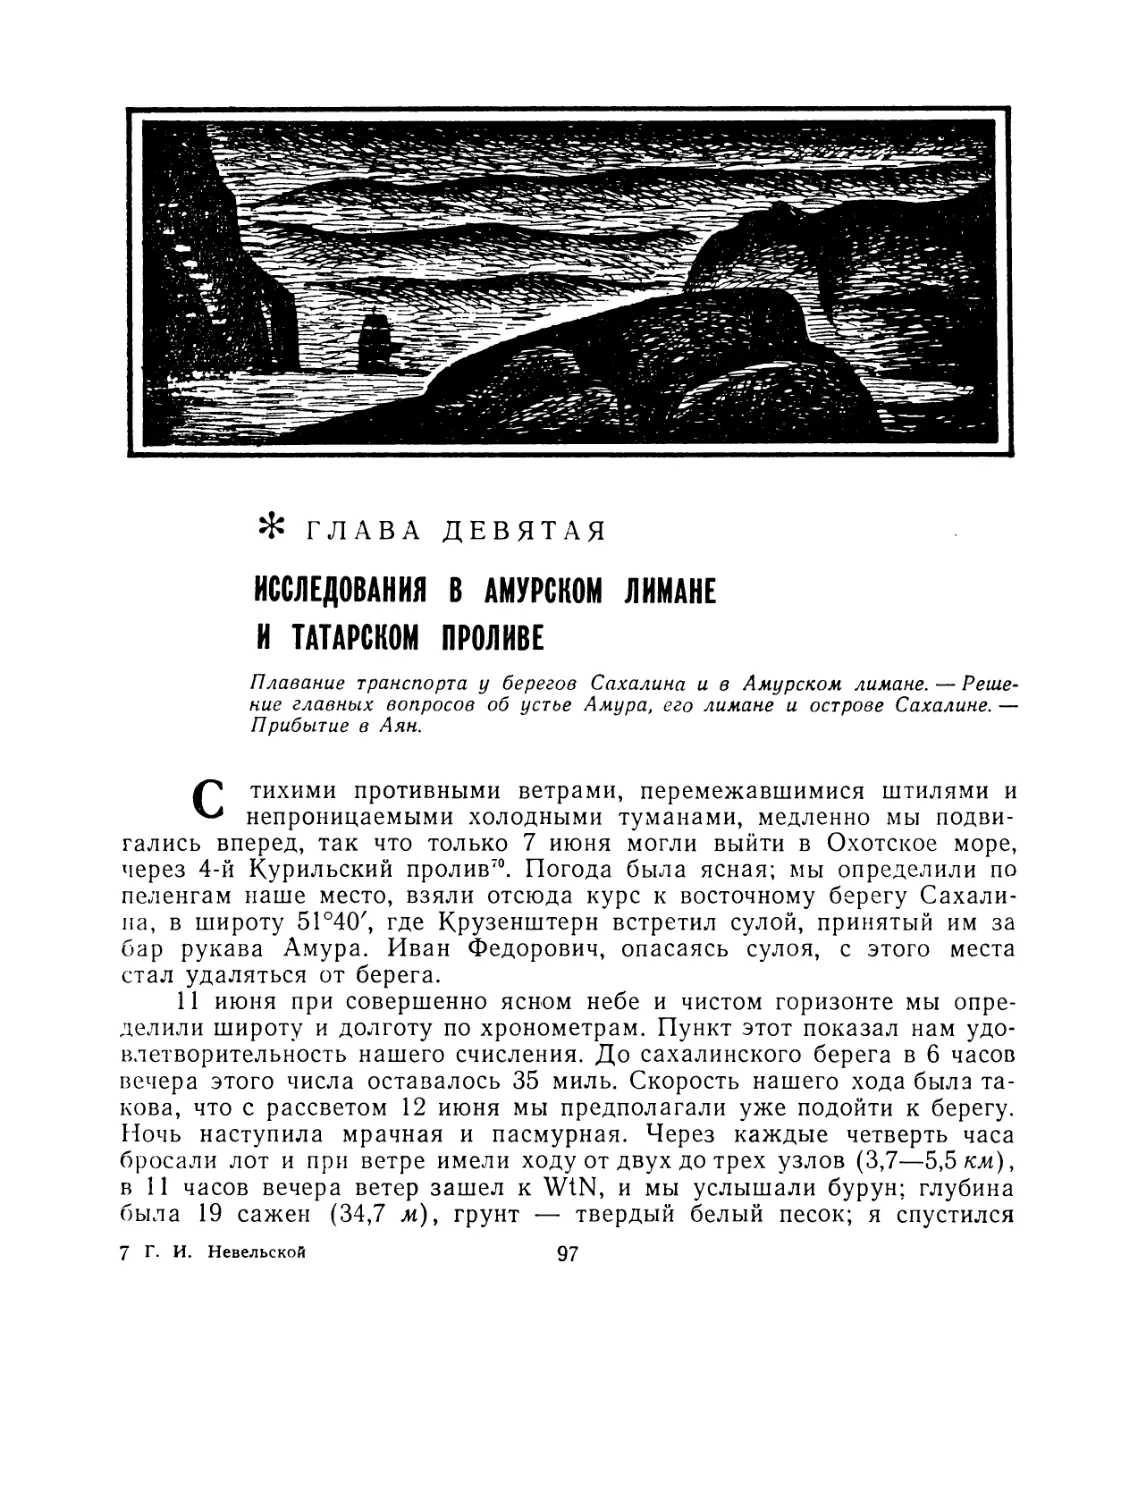 Глава девятая. Исследования в Амурском лимане и Татарском проливе